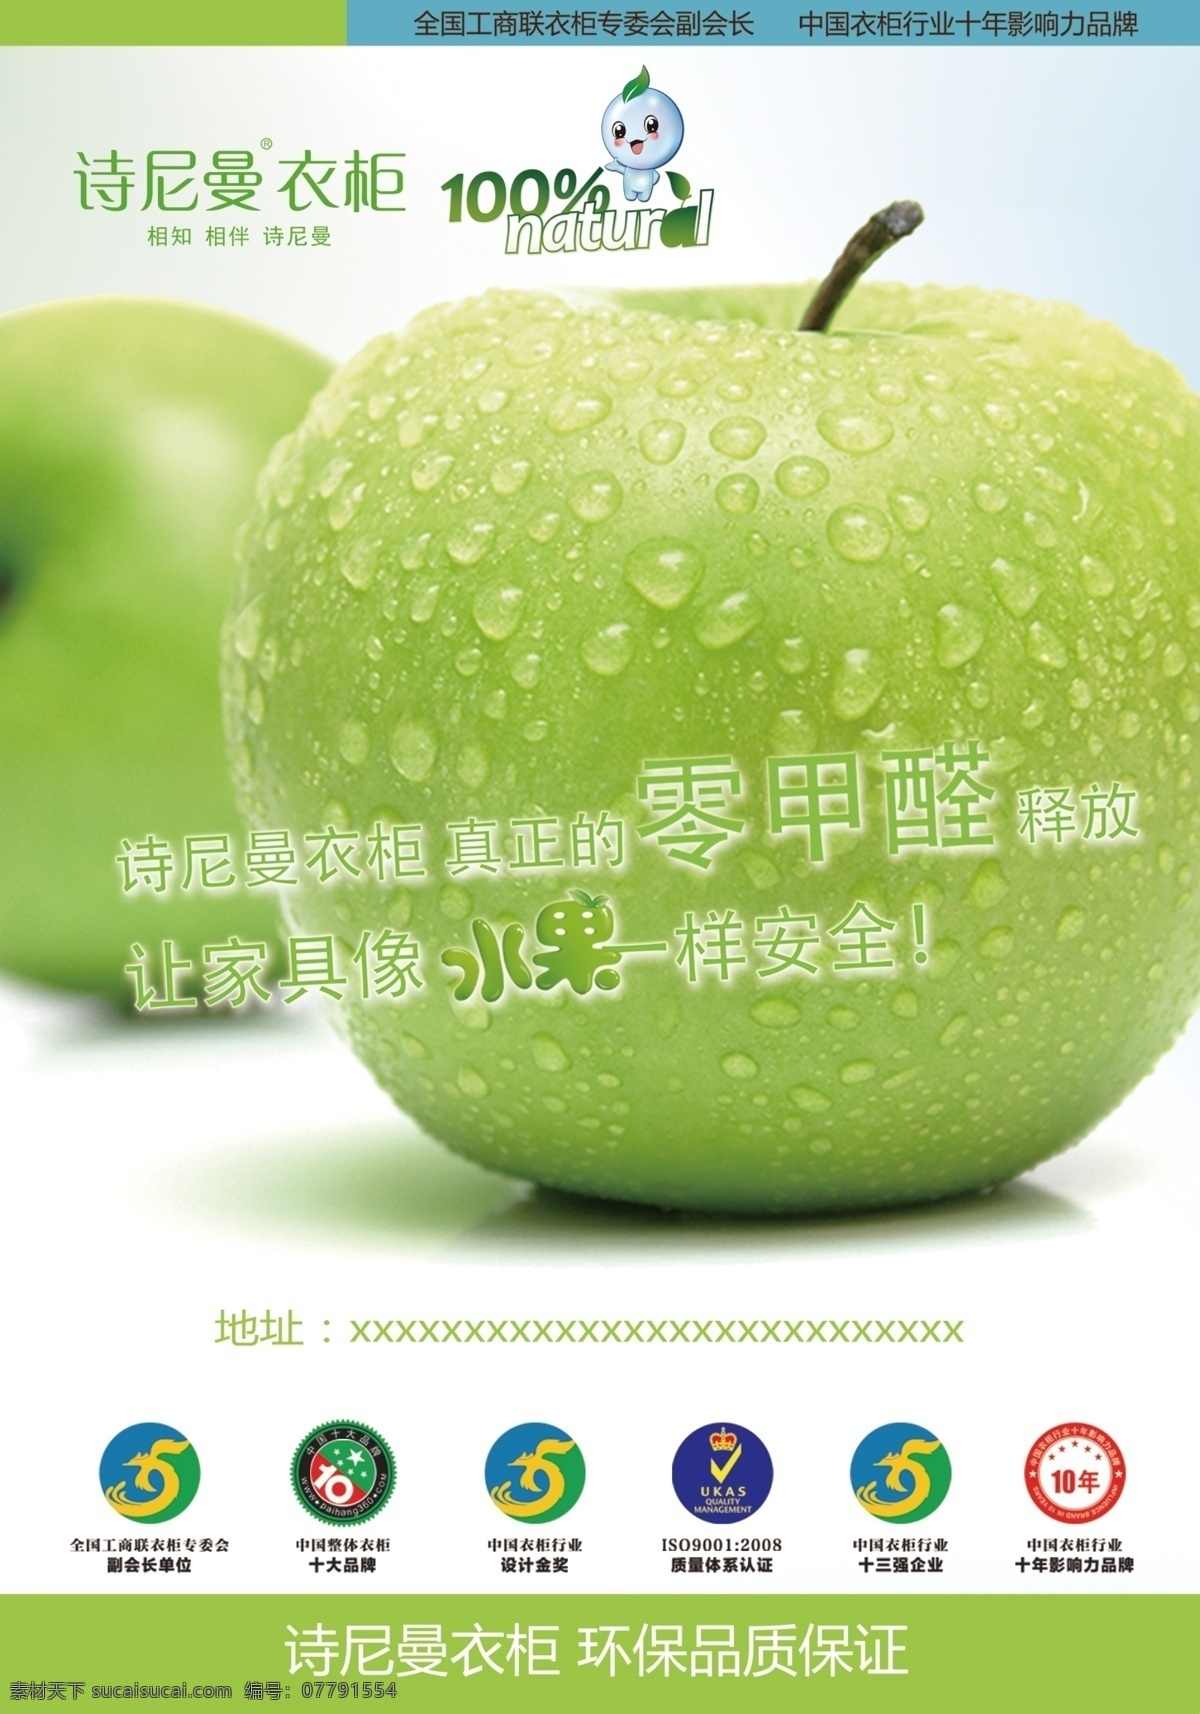 诗尼曼衣柜 诗 尼曼 logo 诗尼曼广告 苹果 绿色苹果 无甲醛 诗尼曼